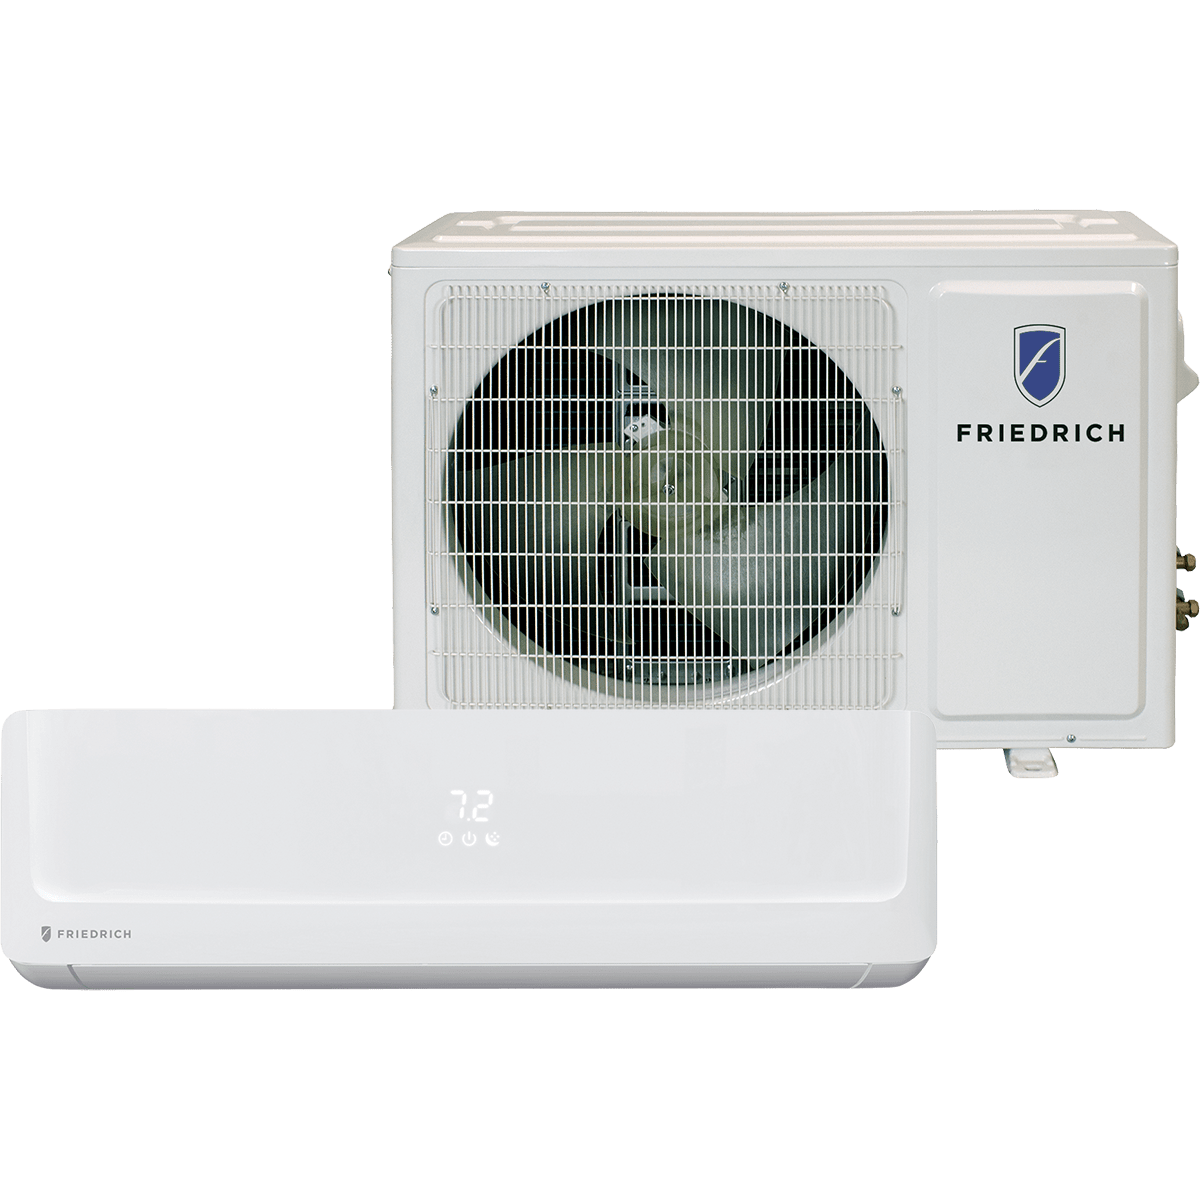 friedrich-12-000-btu-floating-air-pro-mini-split-heat-pump-230v